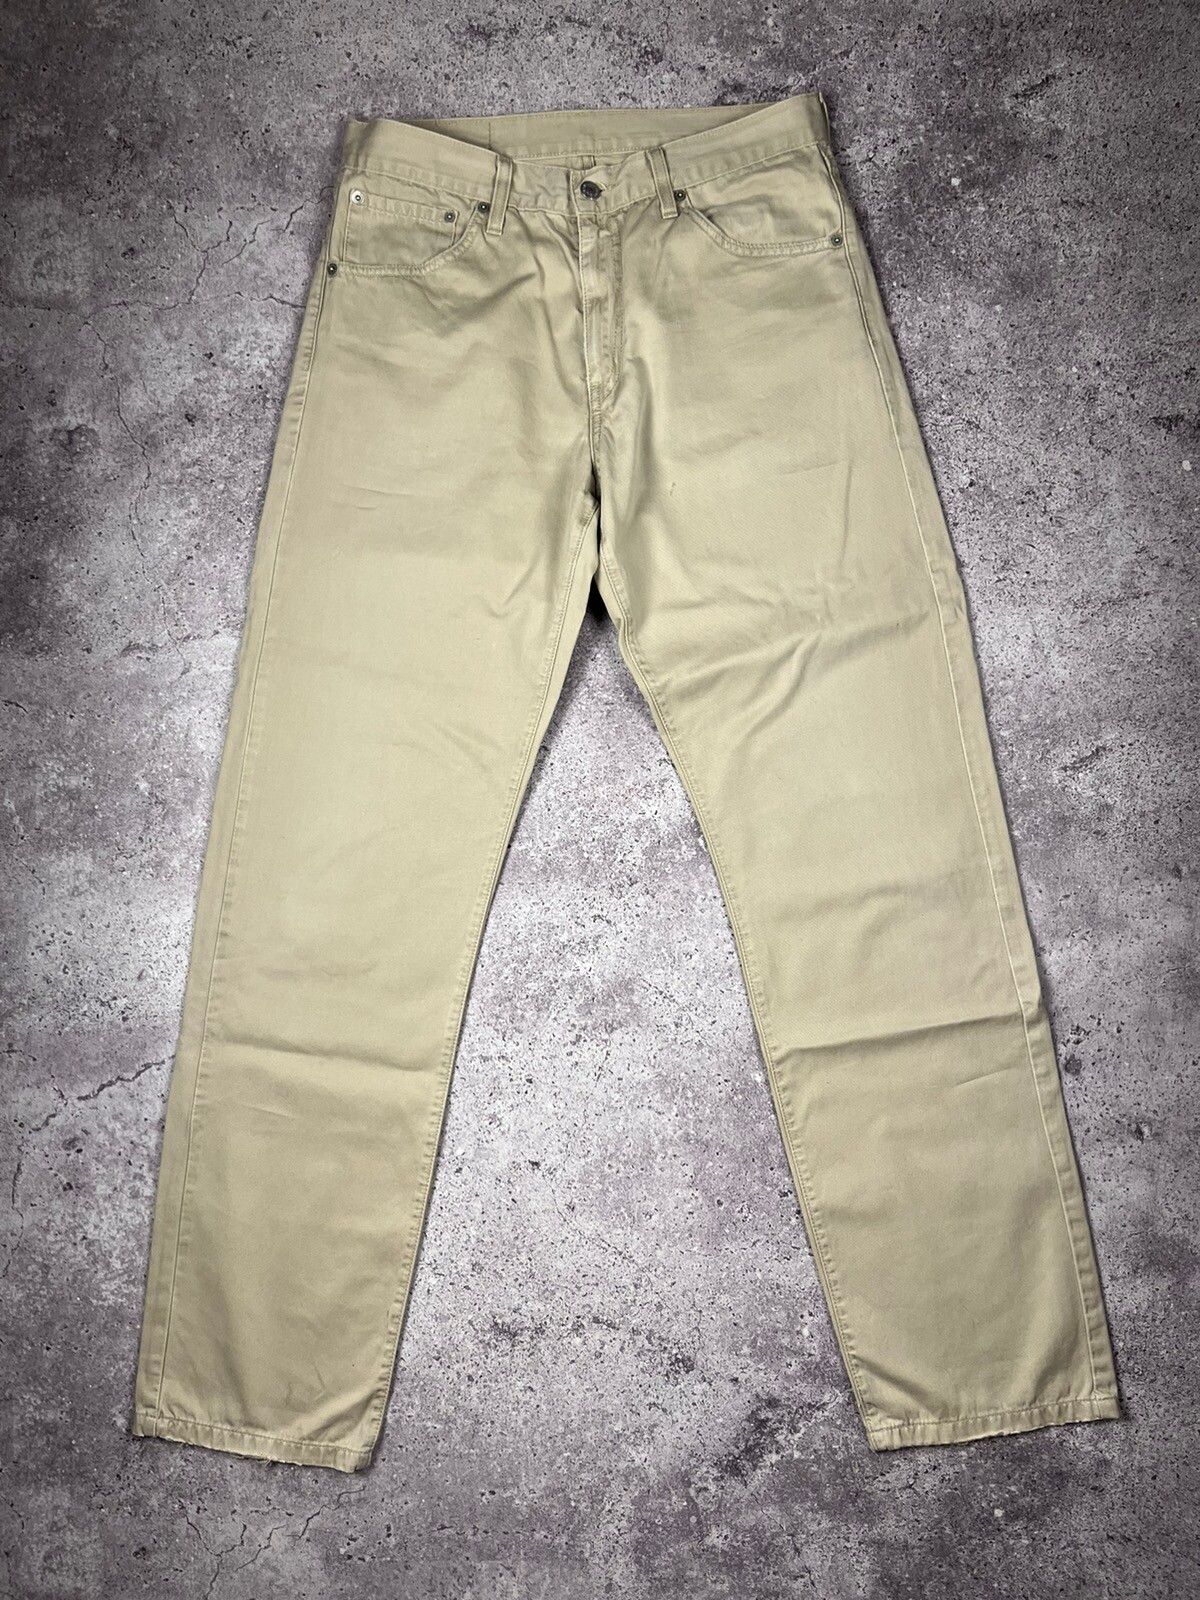 Pre-owned Levis X Levis Vintage Clothing Vintage 90's Levi's 521 Tan Pants Beige 33x34